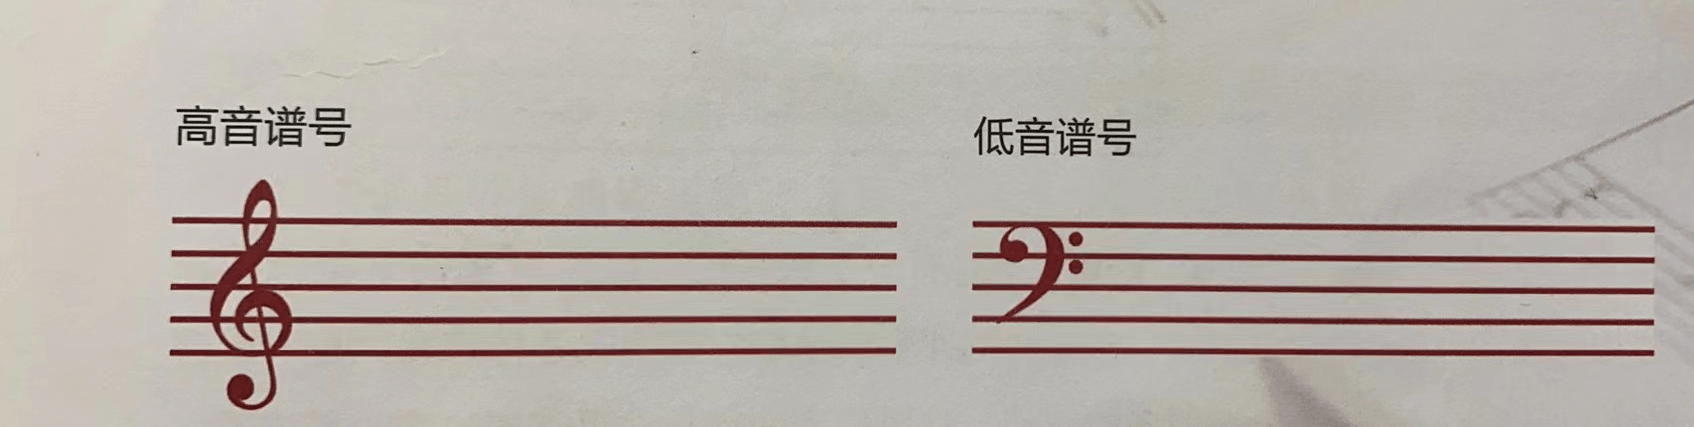 这两个符号是高音谱号和低音谱号,如果你看过钢琴的谱子,会发现这两个